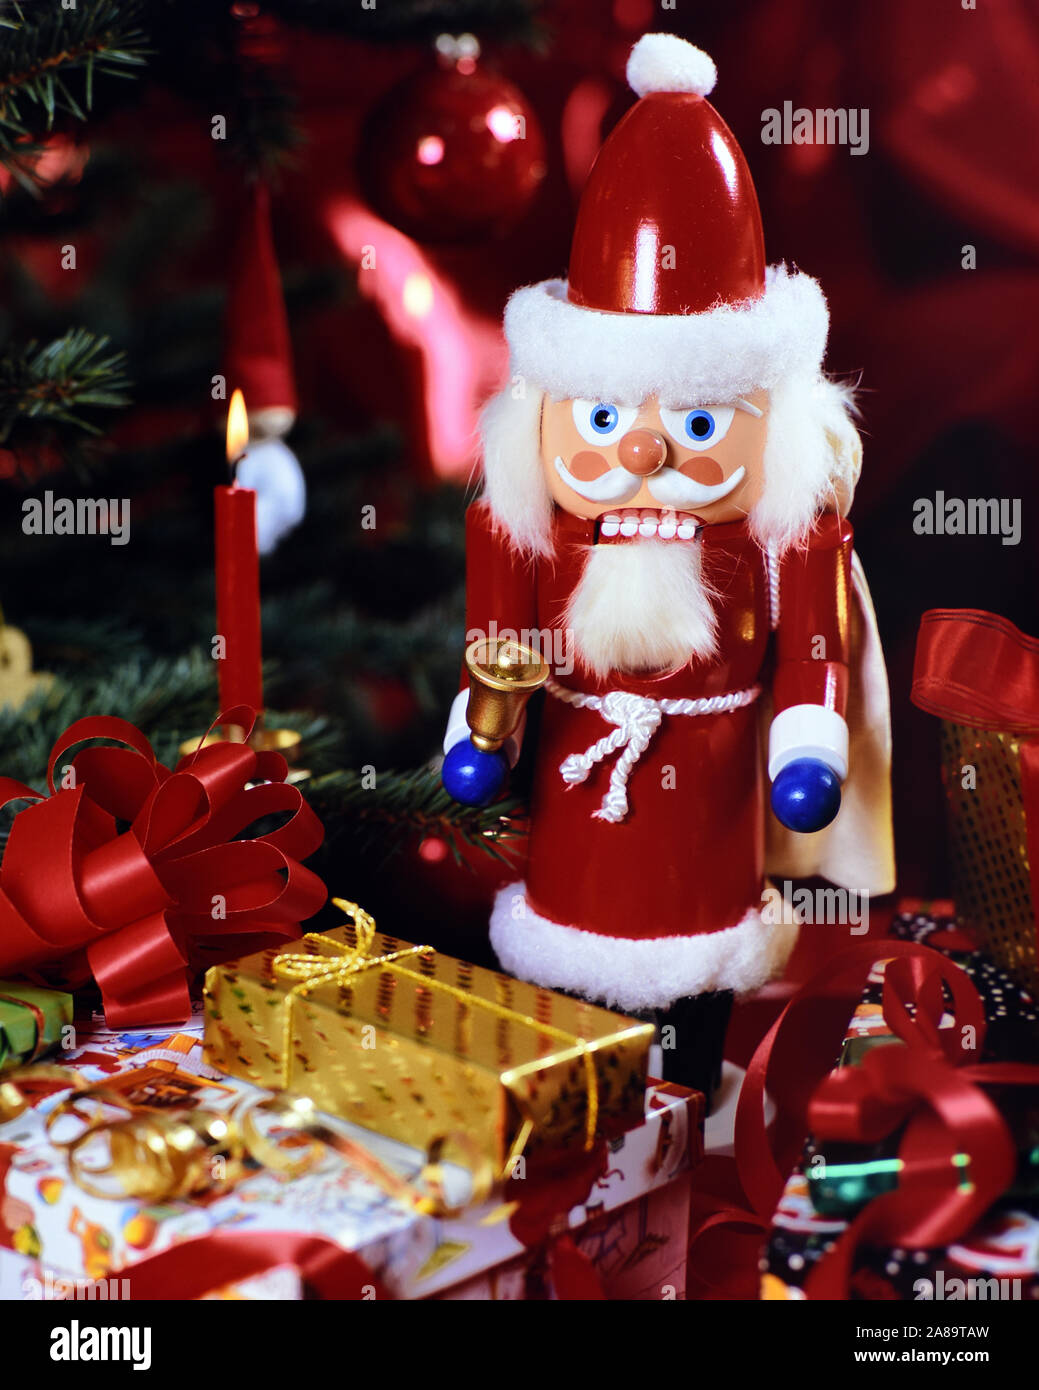 Nussknacker vor weihnachtlicher Dekoration, Tannenbaum, Weihnachtsbaum, Weihnachten, Schokolade, Nüsse, Obst, Stock Photo